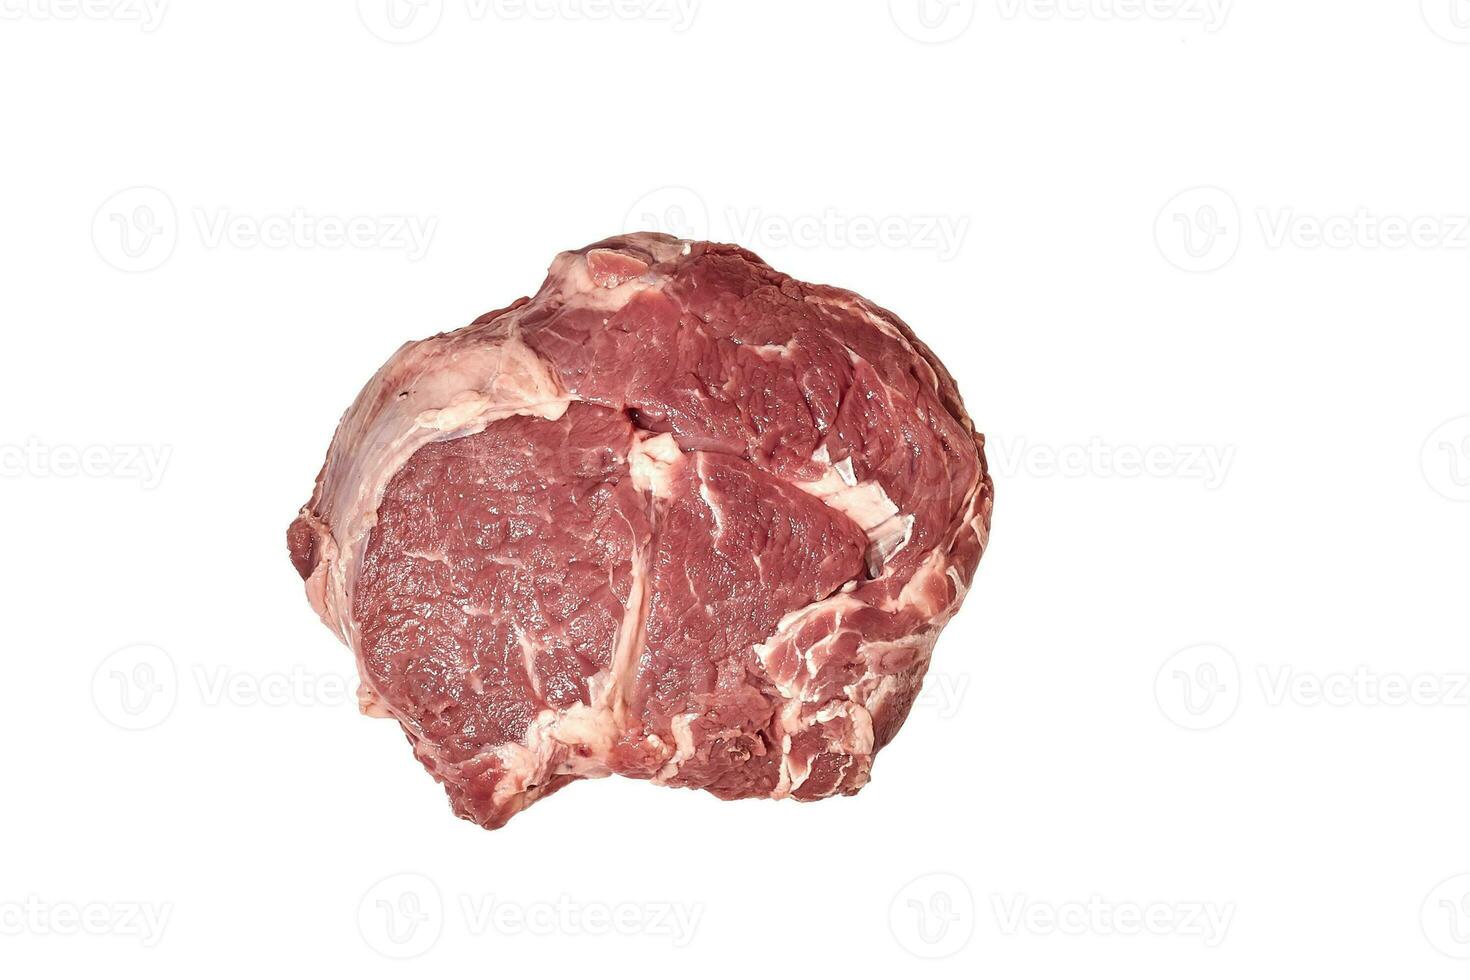 färsk rå nötkött biff isolerat på vit bakgrund, topp se. foto